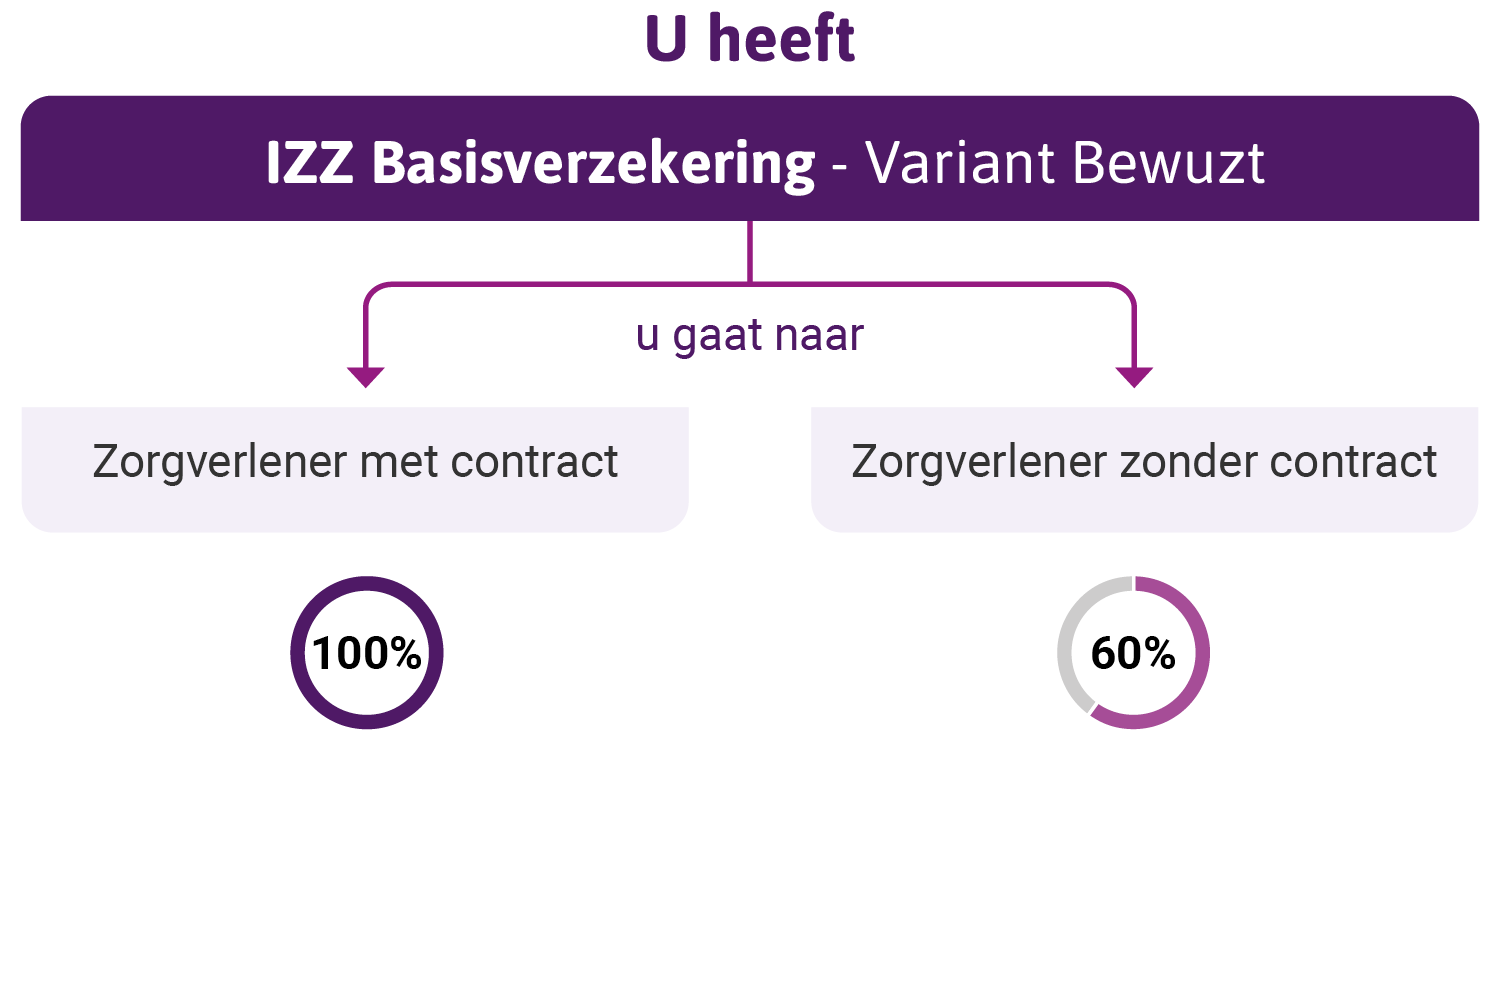 infographic over IZZ Bewuzt basisverzekering